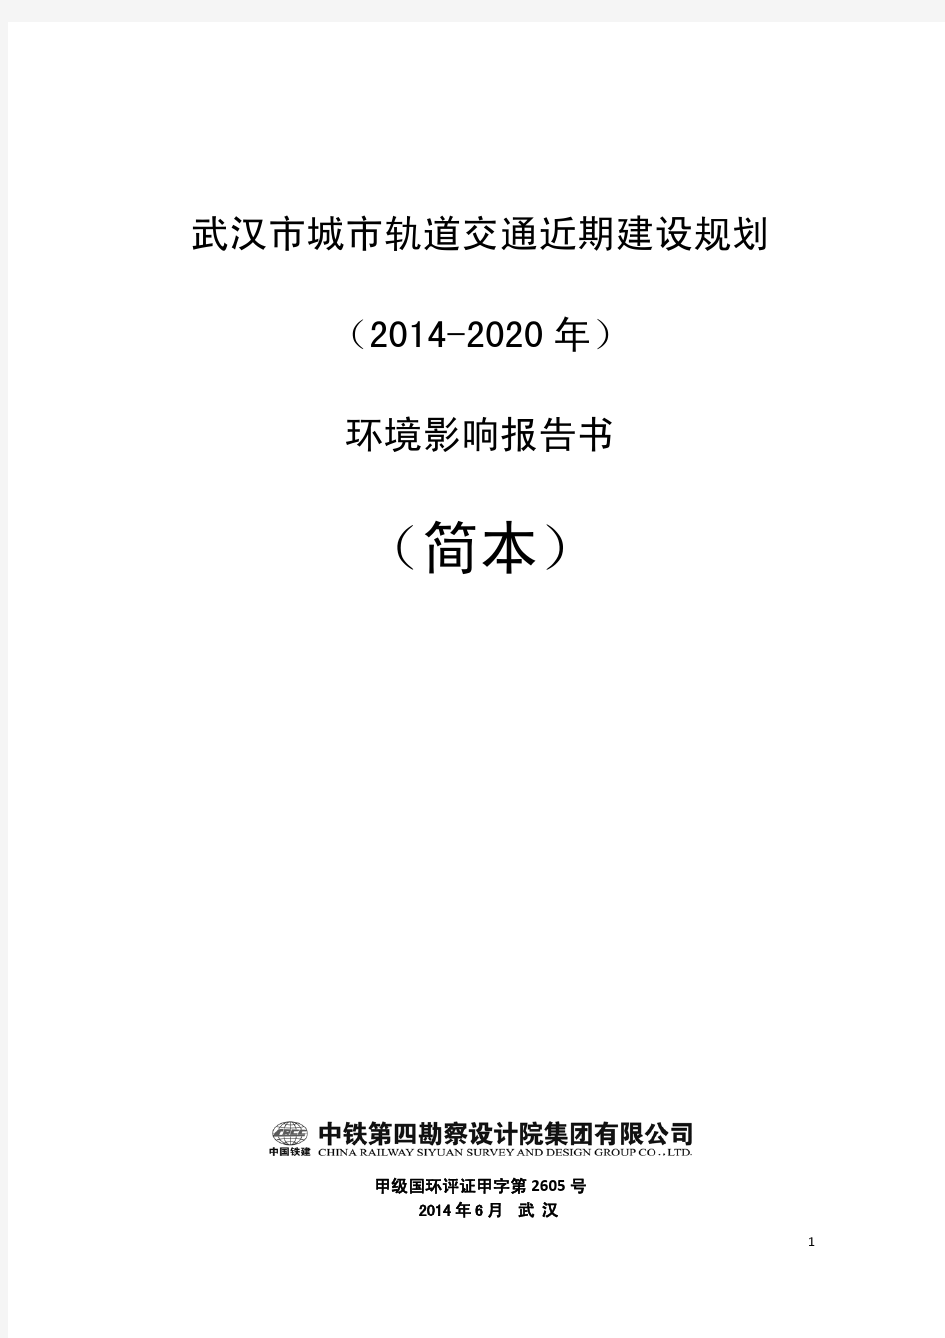 武汉市城市轨道交通近期建设规划(2014-2020年)环境影响报告(简本)